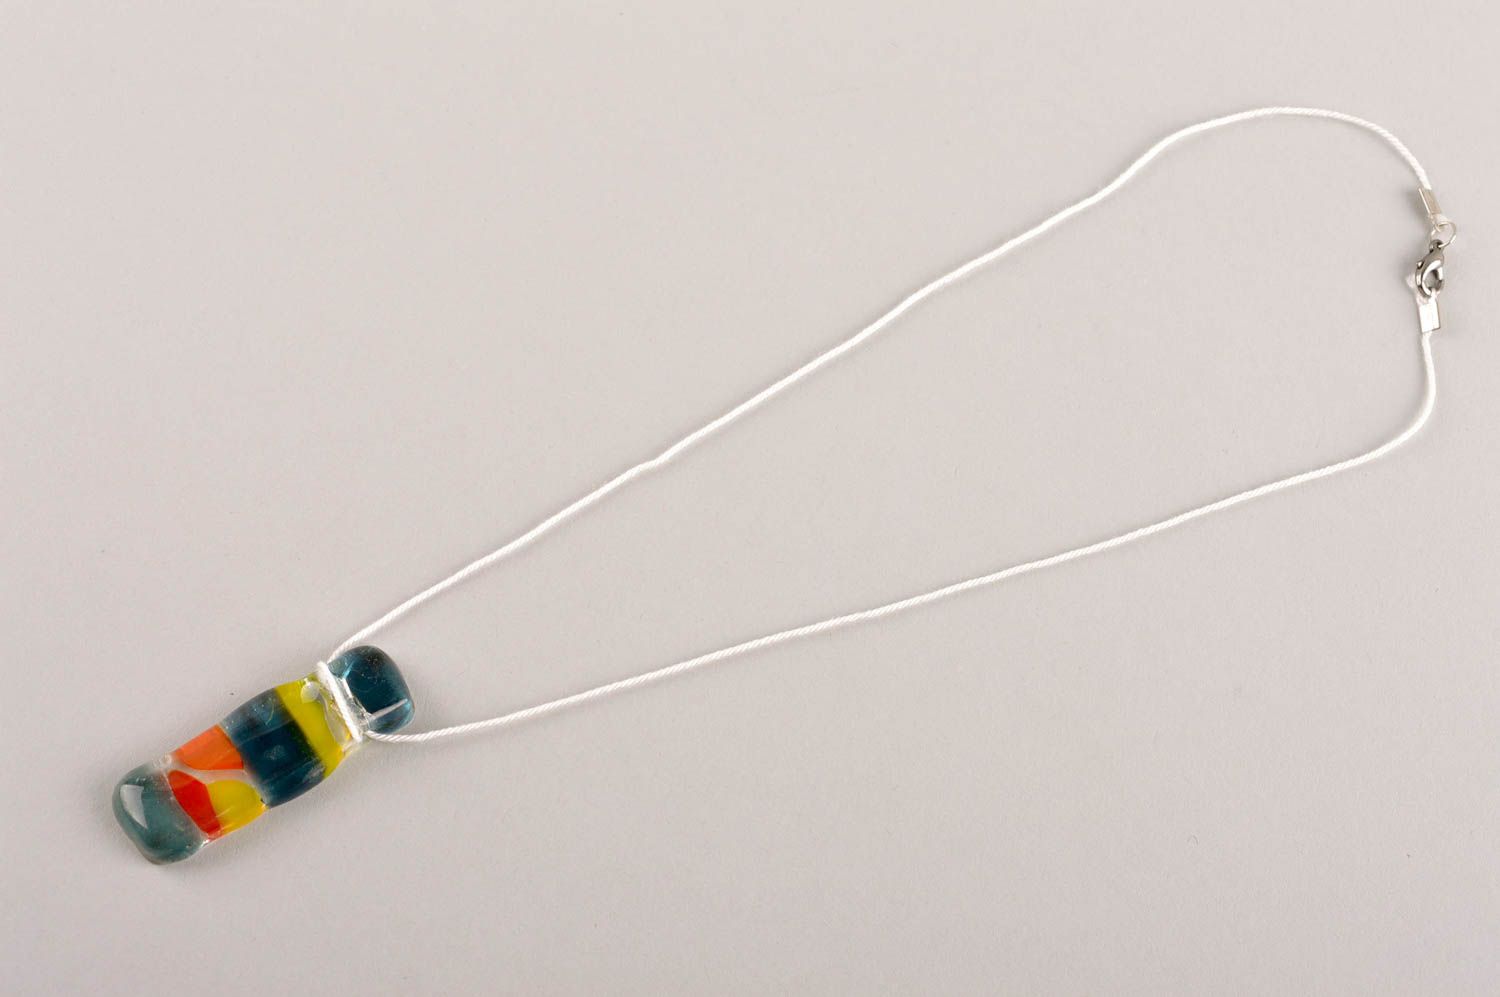 Handmade pendant designer accessory glass pendant for women gift ideas photo 4